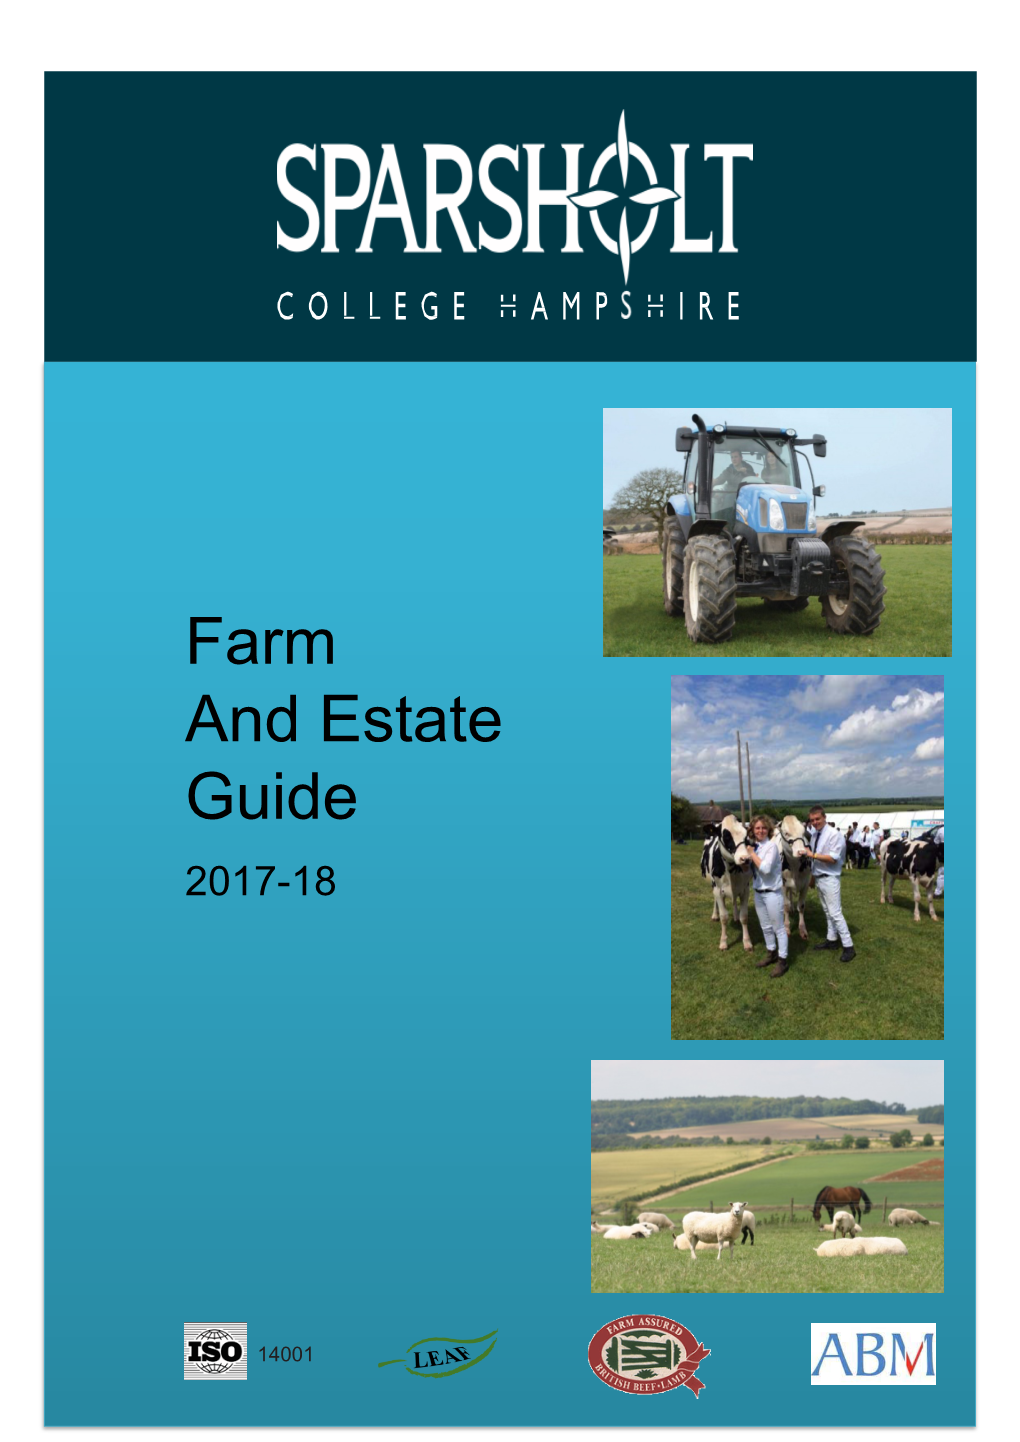 Farm and Estate Guide 2017-18